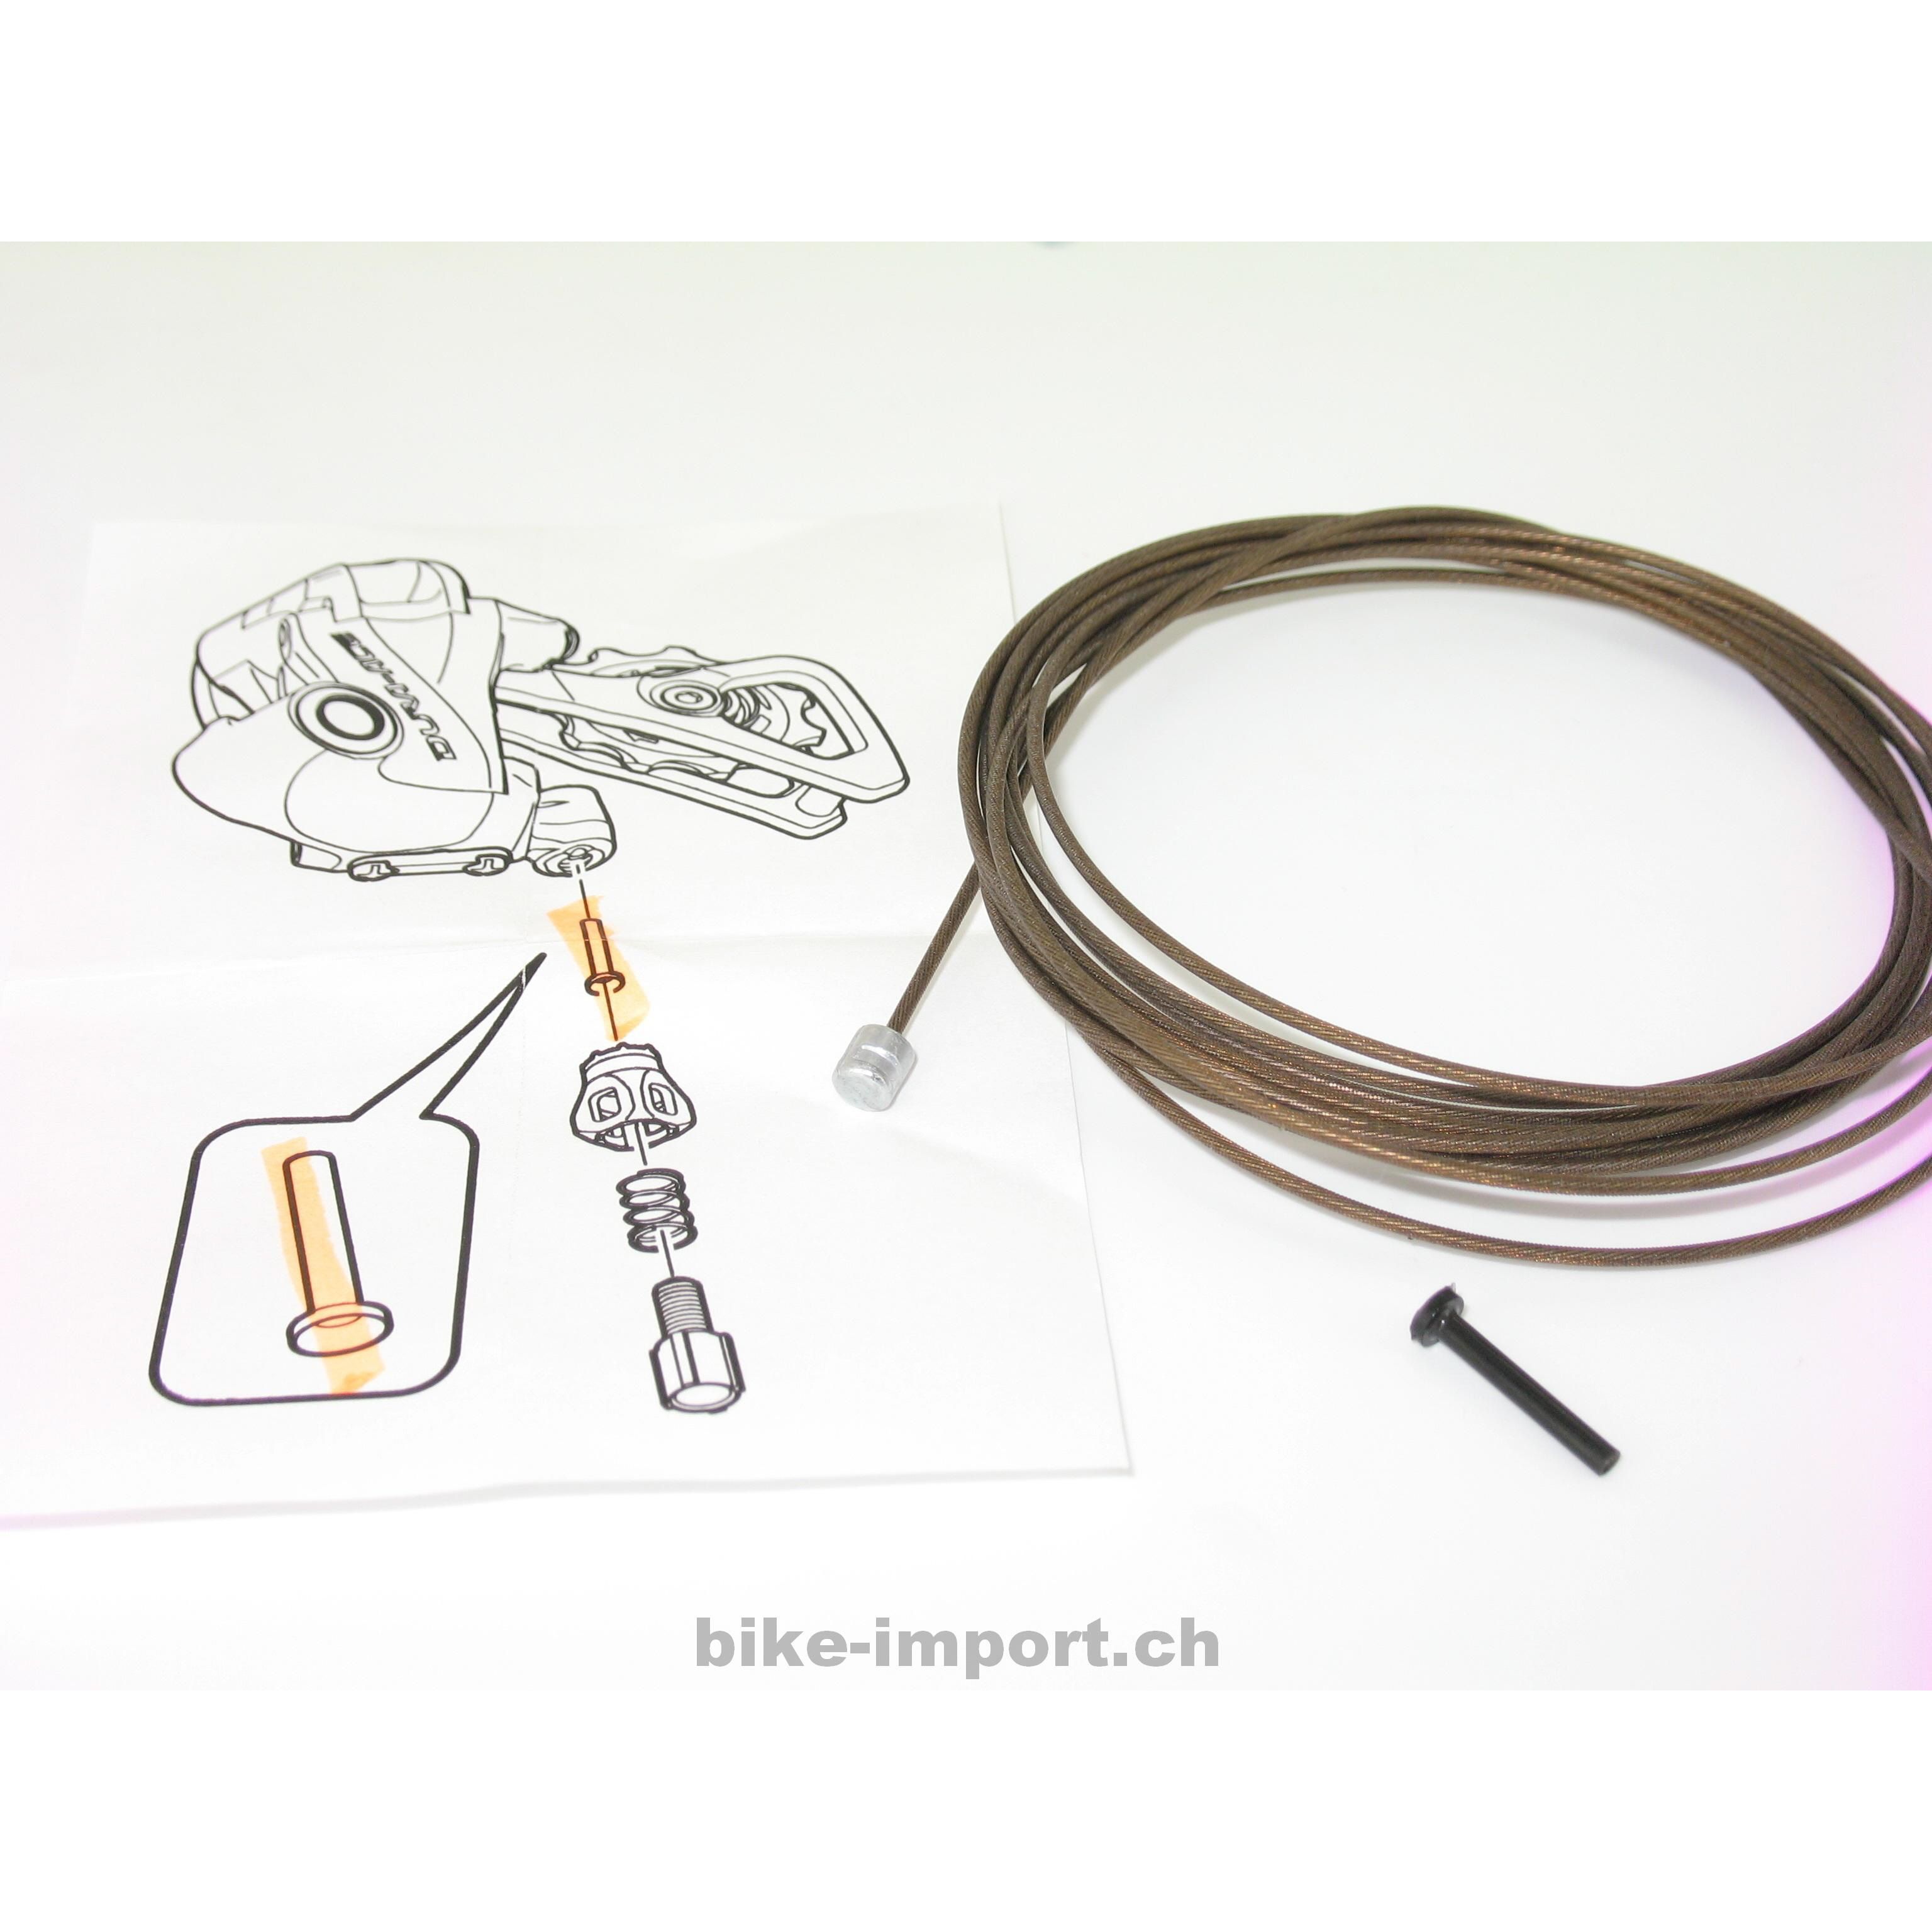 Kabelzug Polymer beschichtet (Dura Ace Qualität)